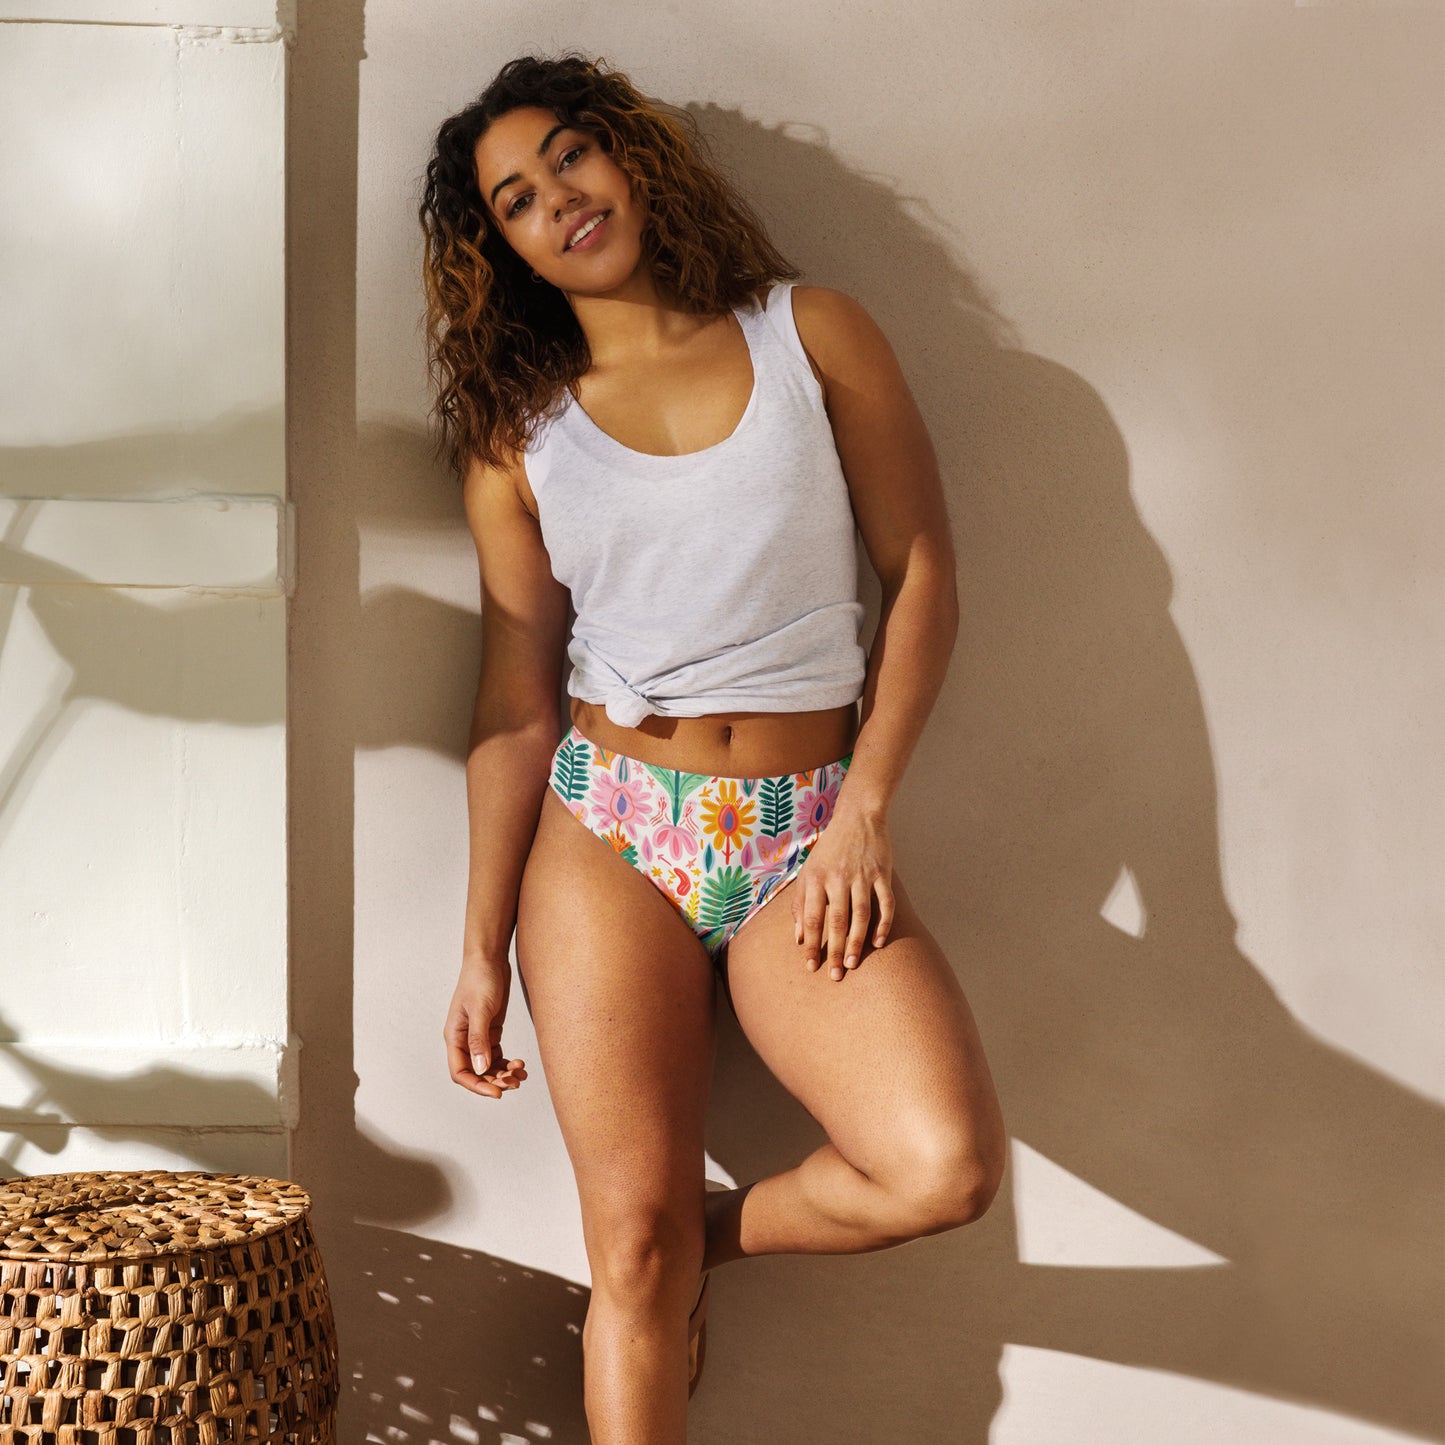 Marbella Recycled Mid-Rise Cheeky Bikini Bottom